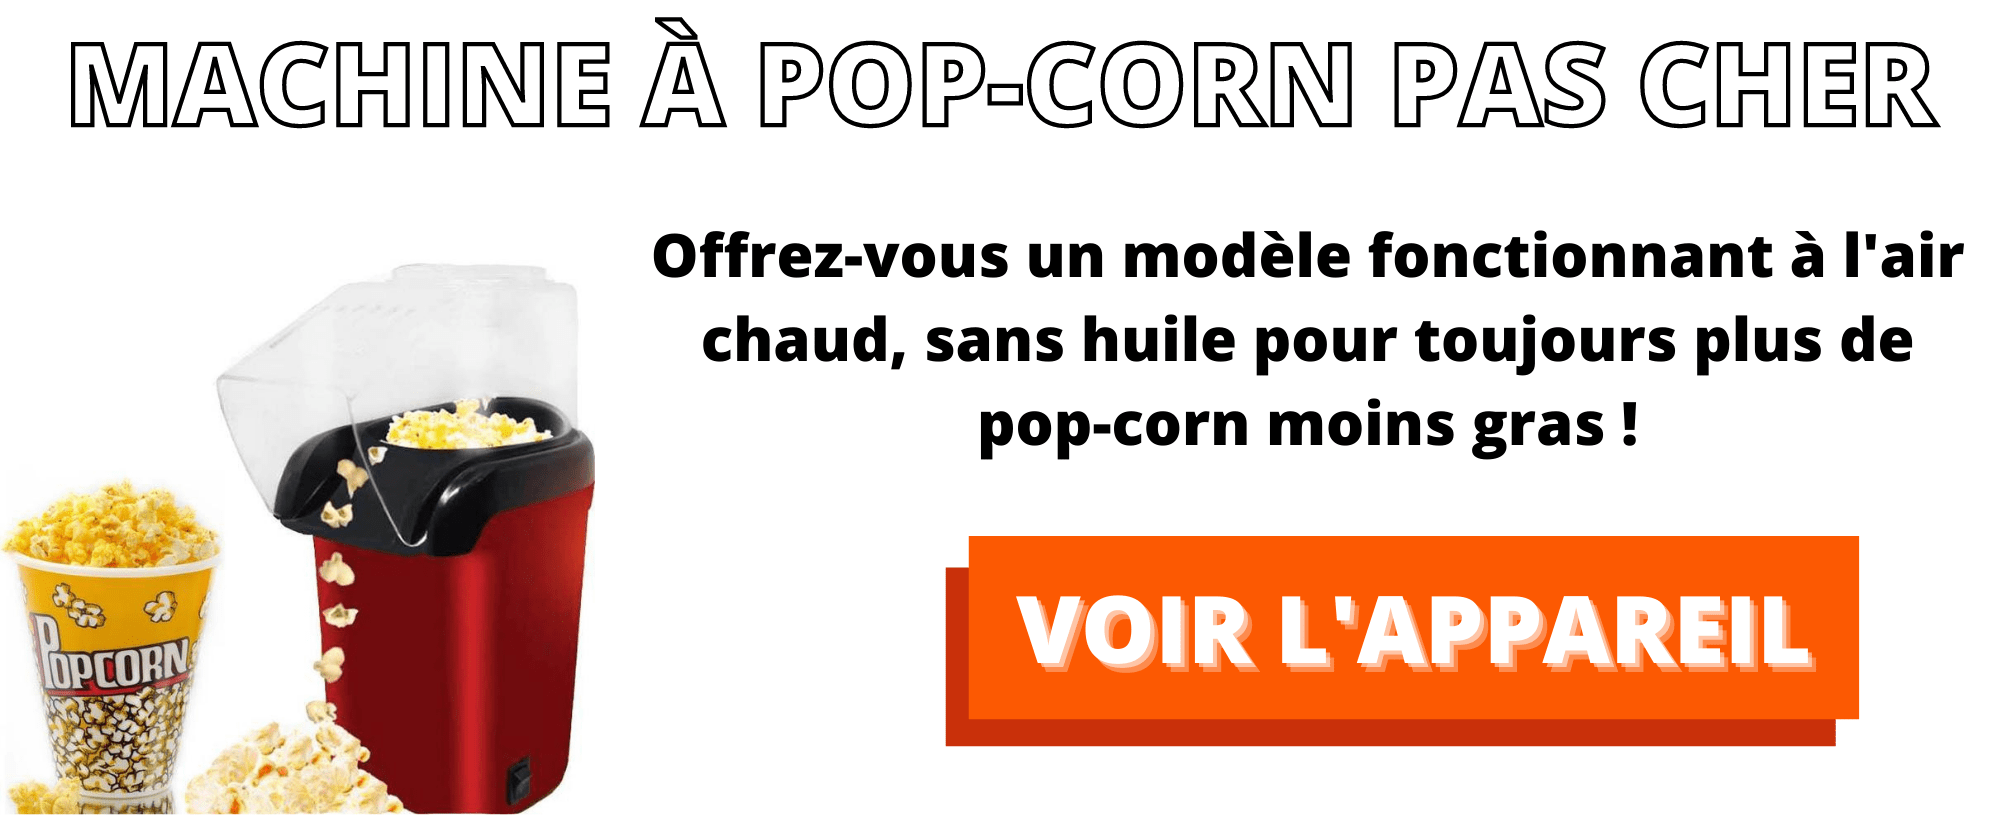 machine a pop-corn pas cher